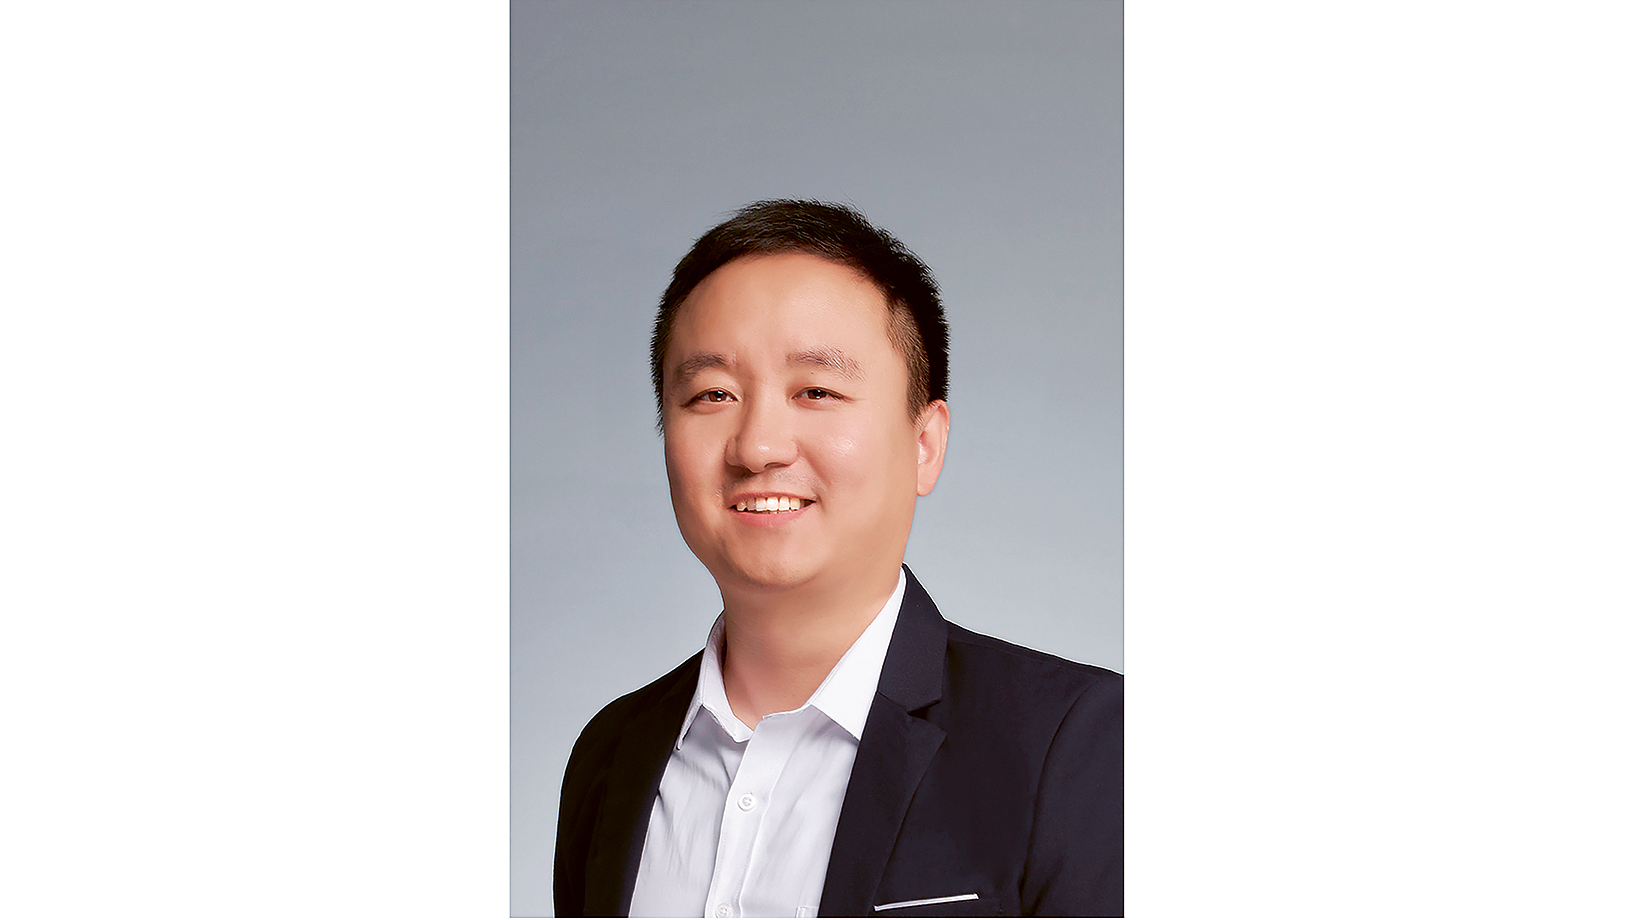 Ben Wang, Software Development Manager, 2020, Porsche AG